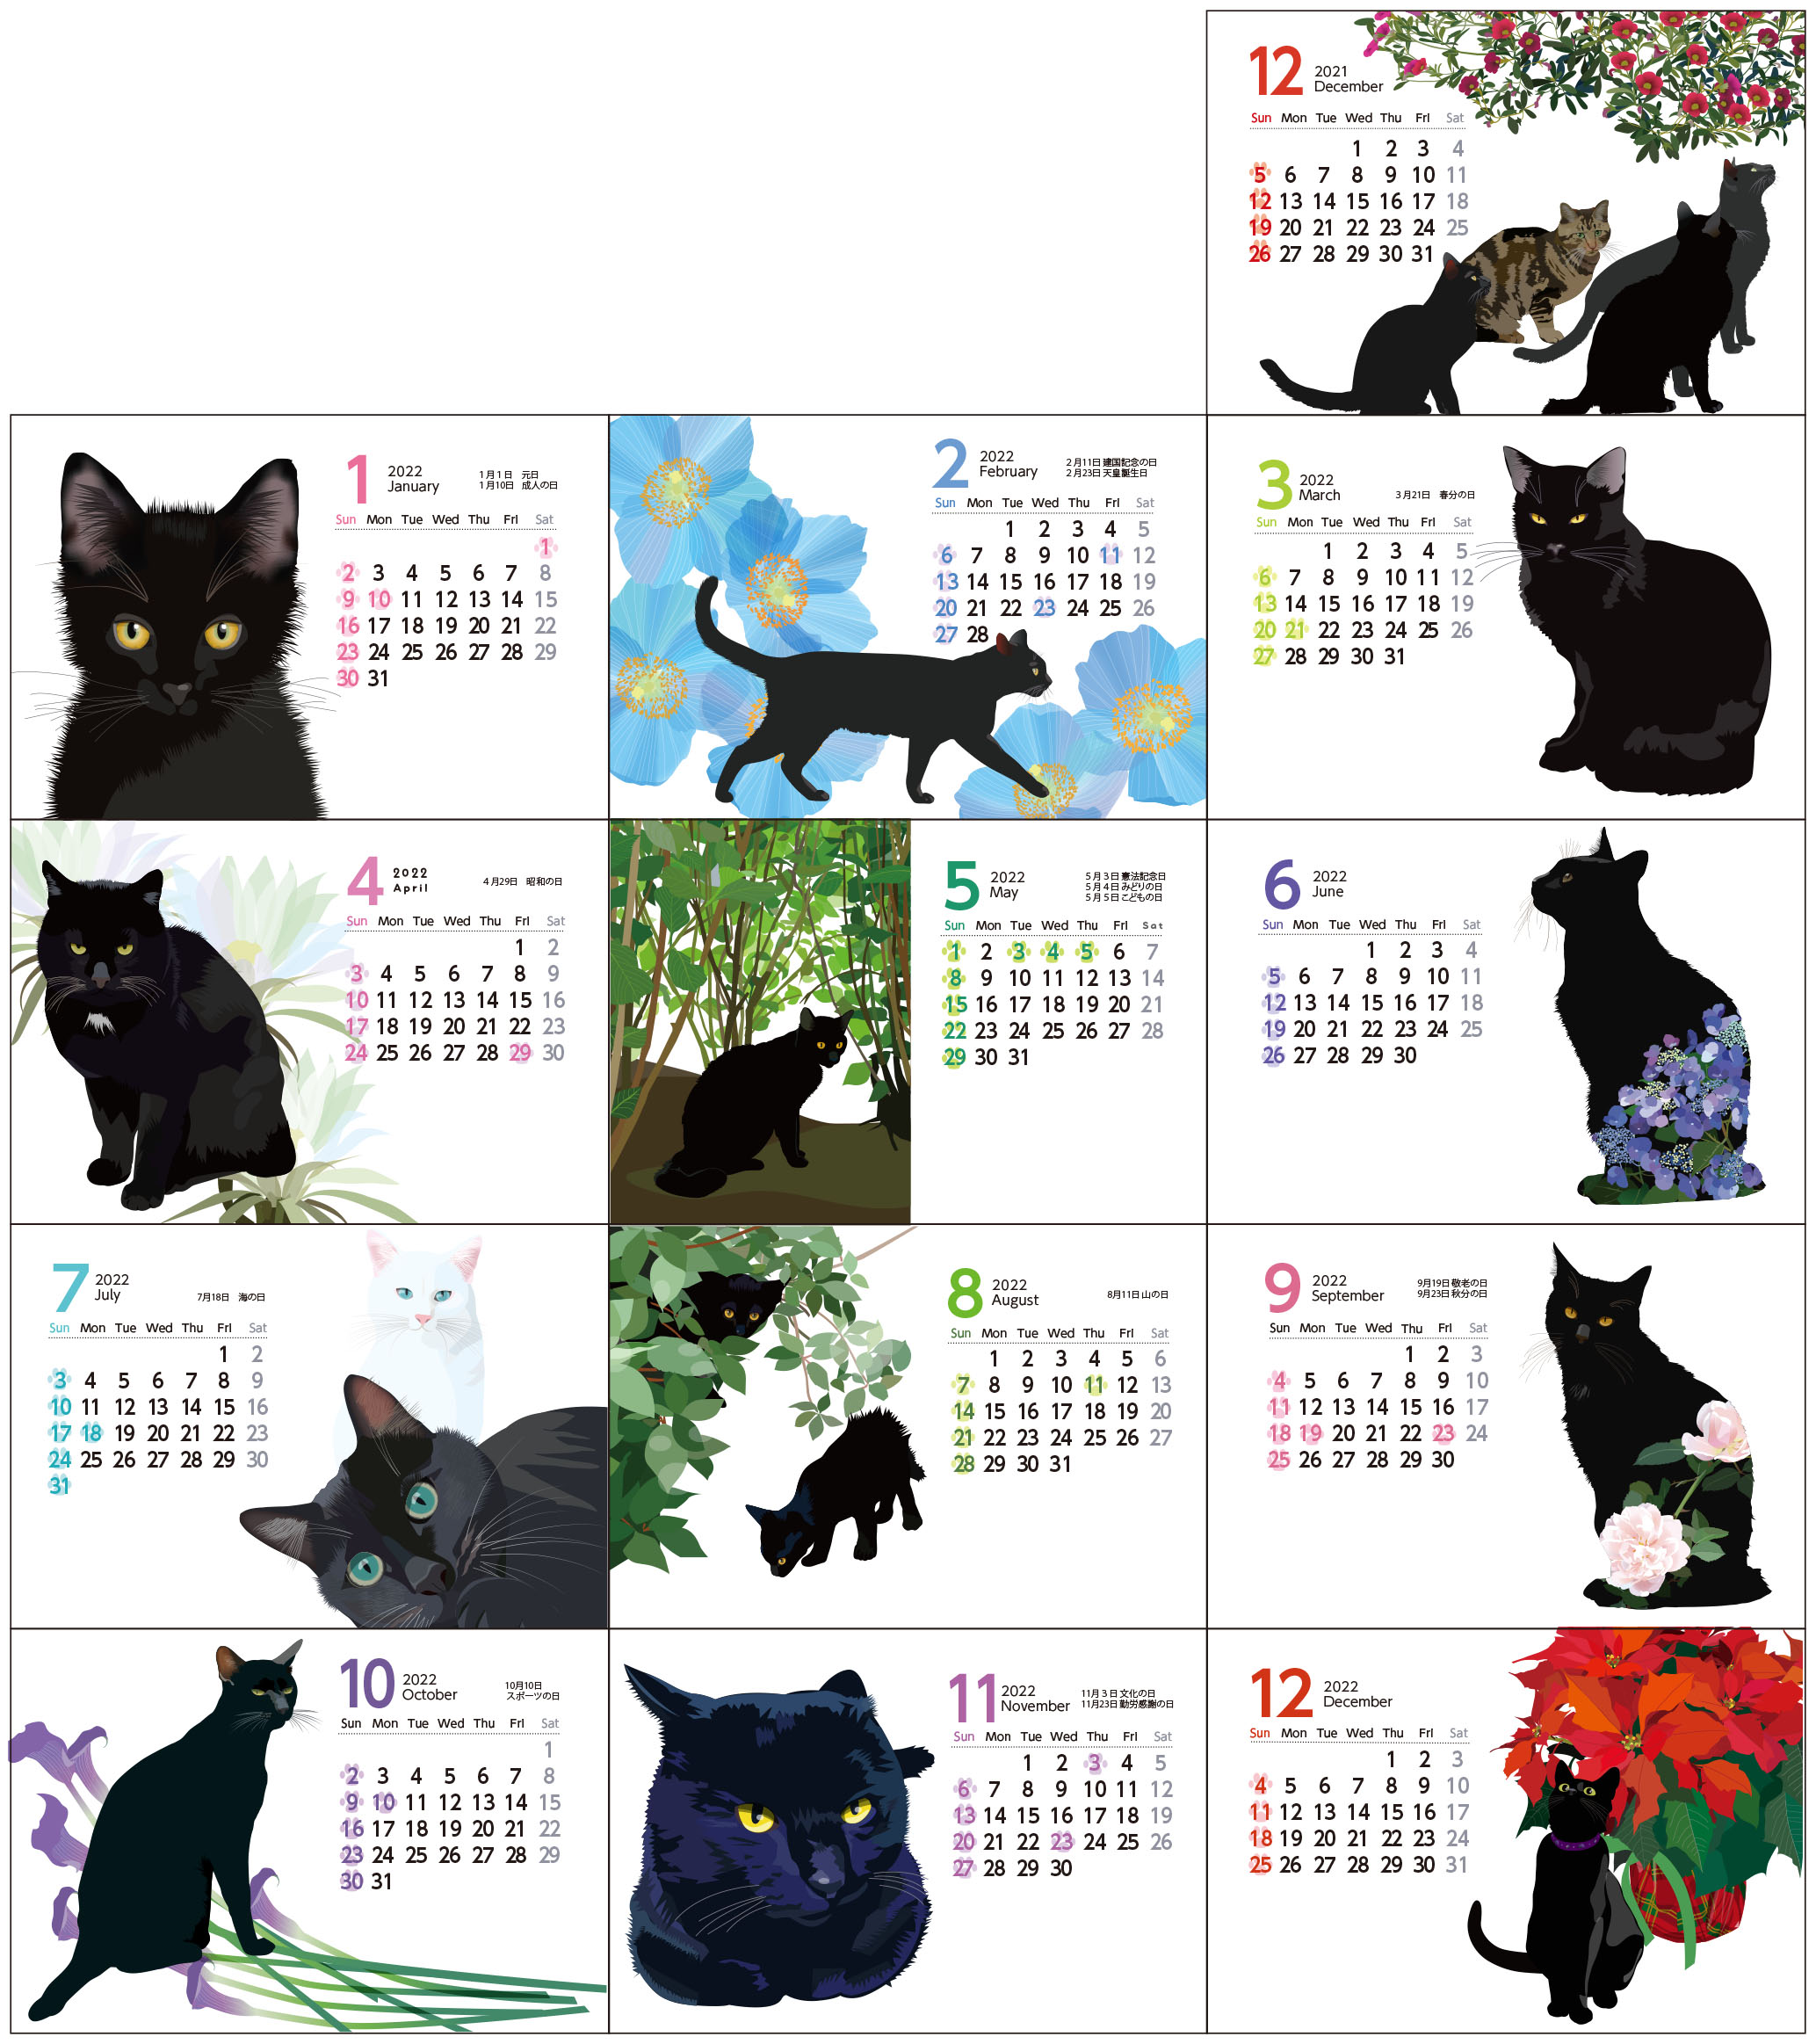 22年猫ともカレンダー 黒猫だけ 21年12月 22年12月 プラケース入り 1000円 Iichi ハンドメイド クラフト作品 手仕事品の通販